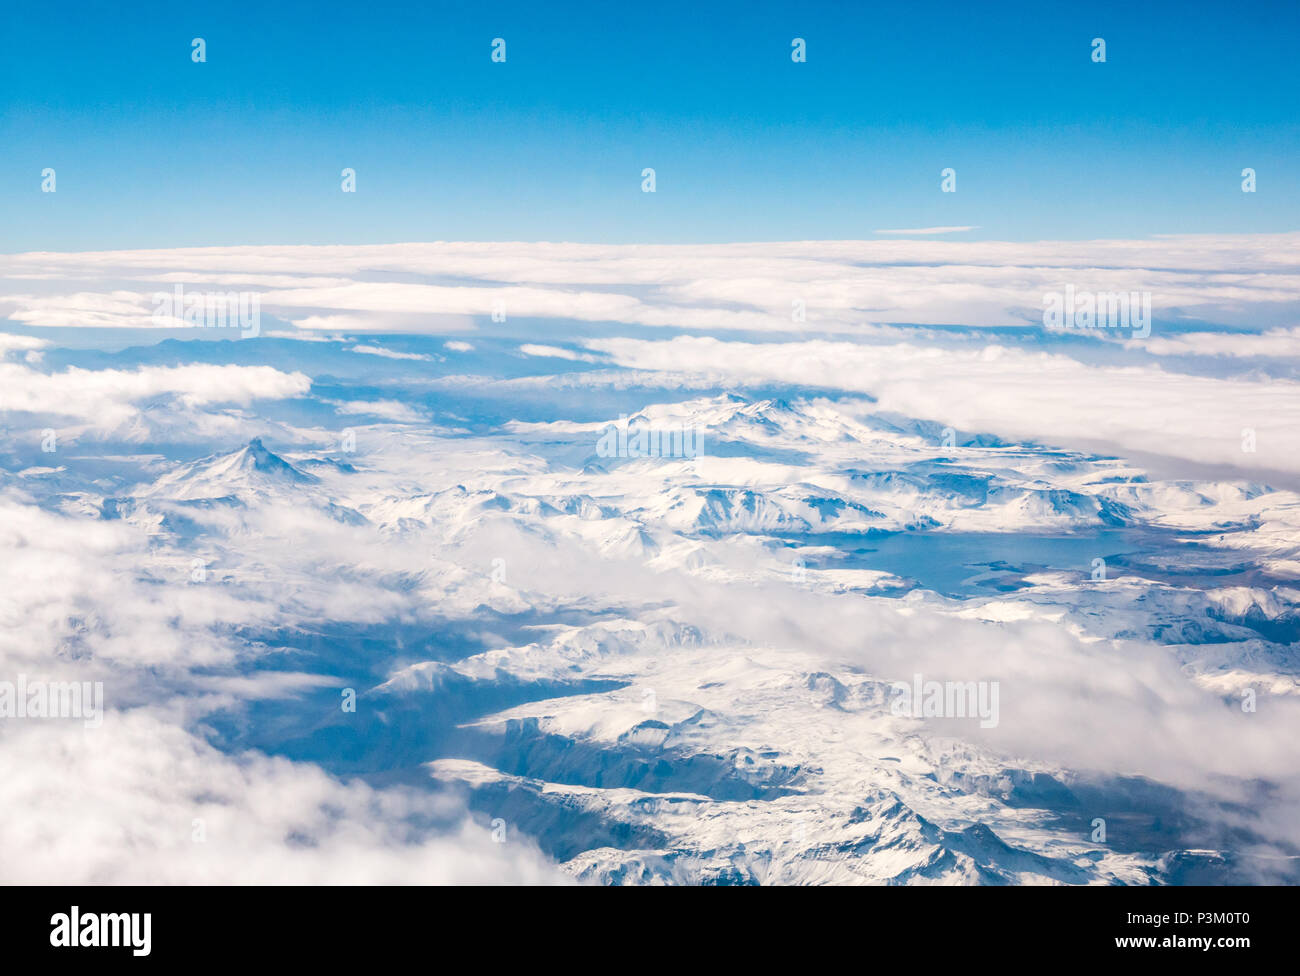 Vue depuis la fenêtre de l'avion de la neige a couvert des Andes avec la couverture nuageuse et le lac, glace de Patagonie australe domaine Patagonie, au Chili, en Amérique du Sud Banque D'Images